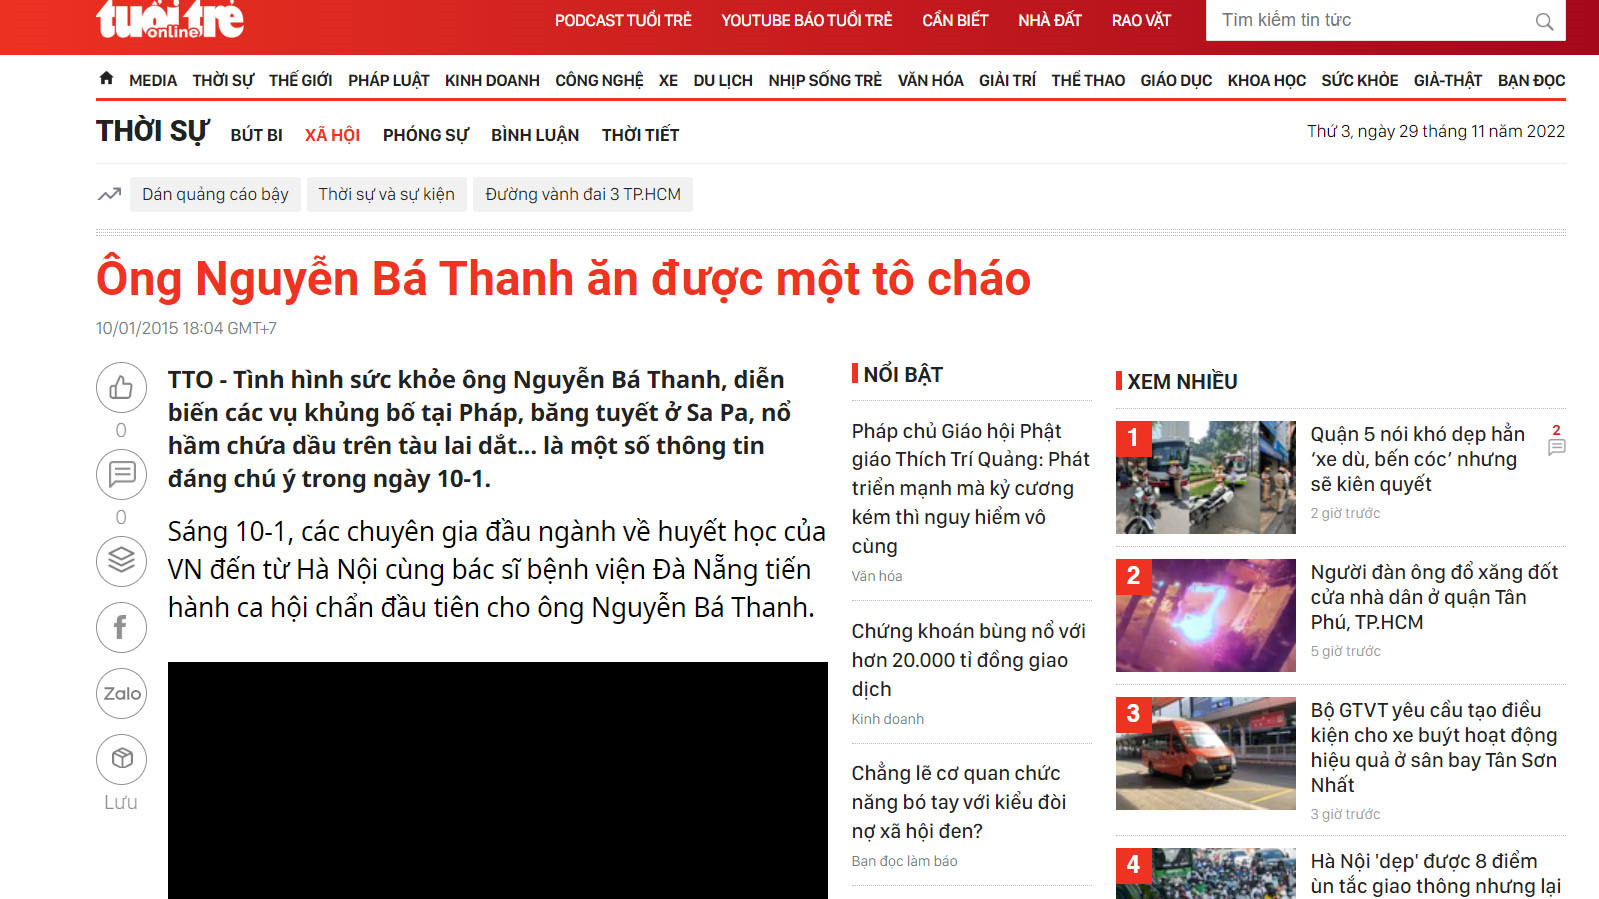 Phó Thủ tướng Lê Văn Thành nói “Tau khỏe có chi mô” rồi chỉ đạo công việc?  - Thời báo